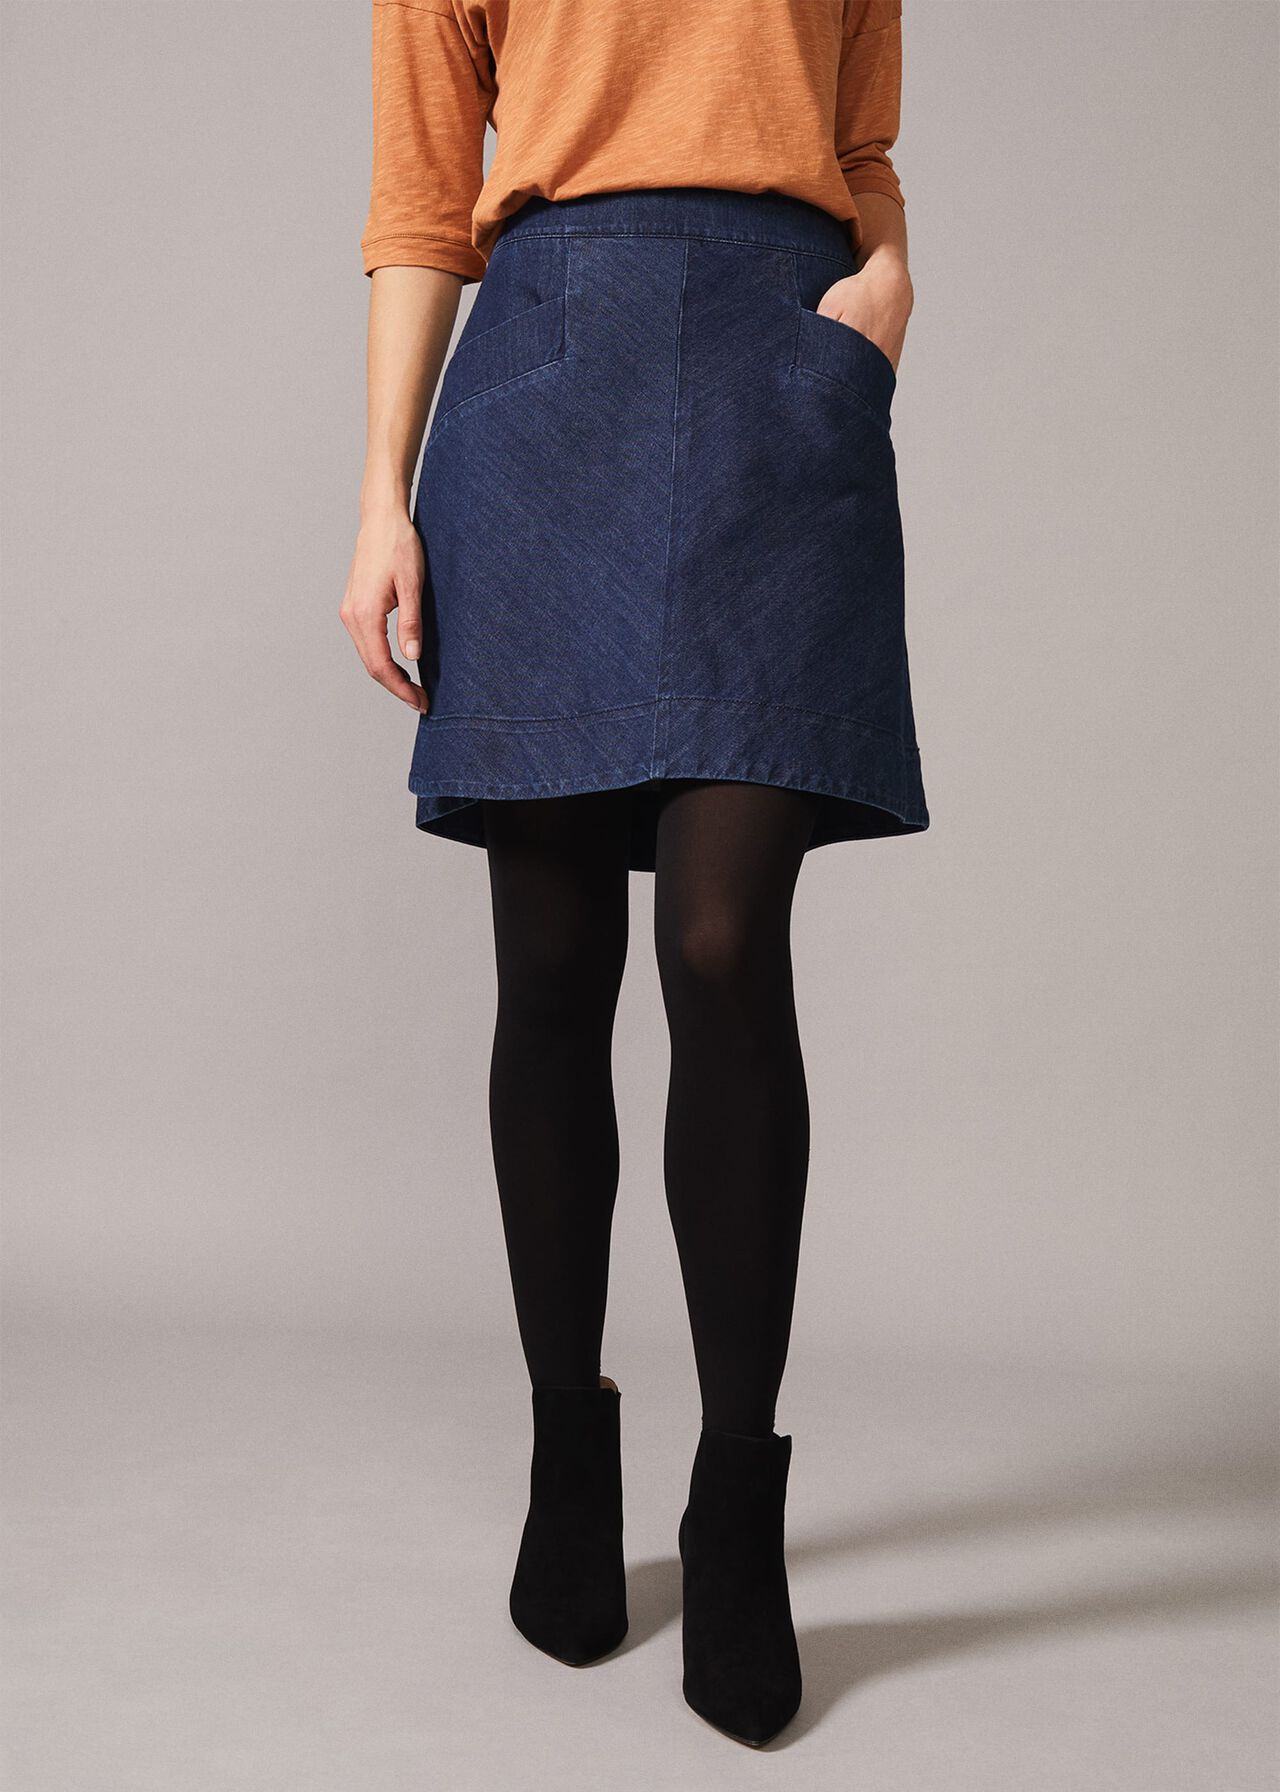 Inkiri A-Line Denim Skirt | Phase Eight UK